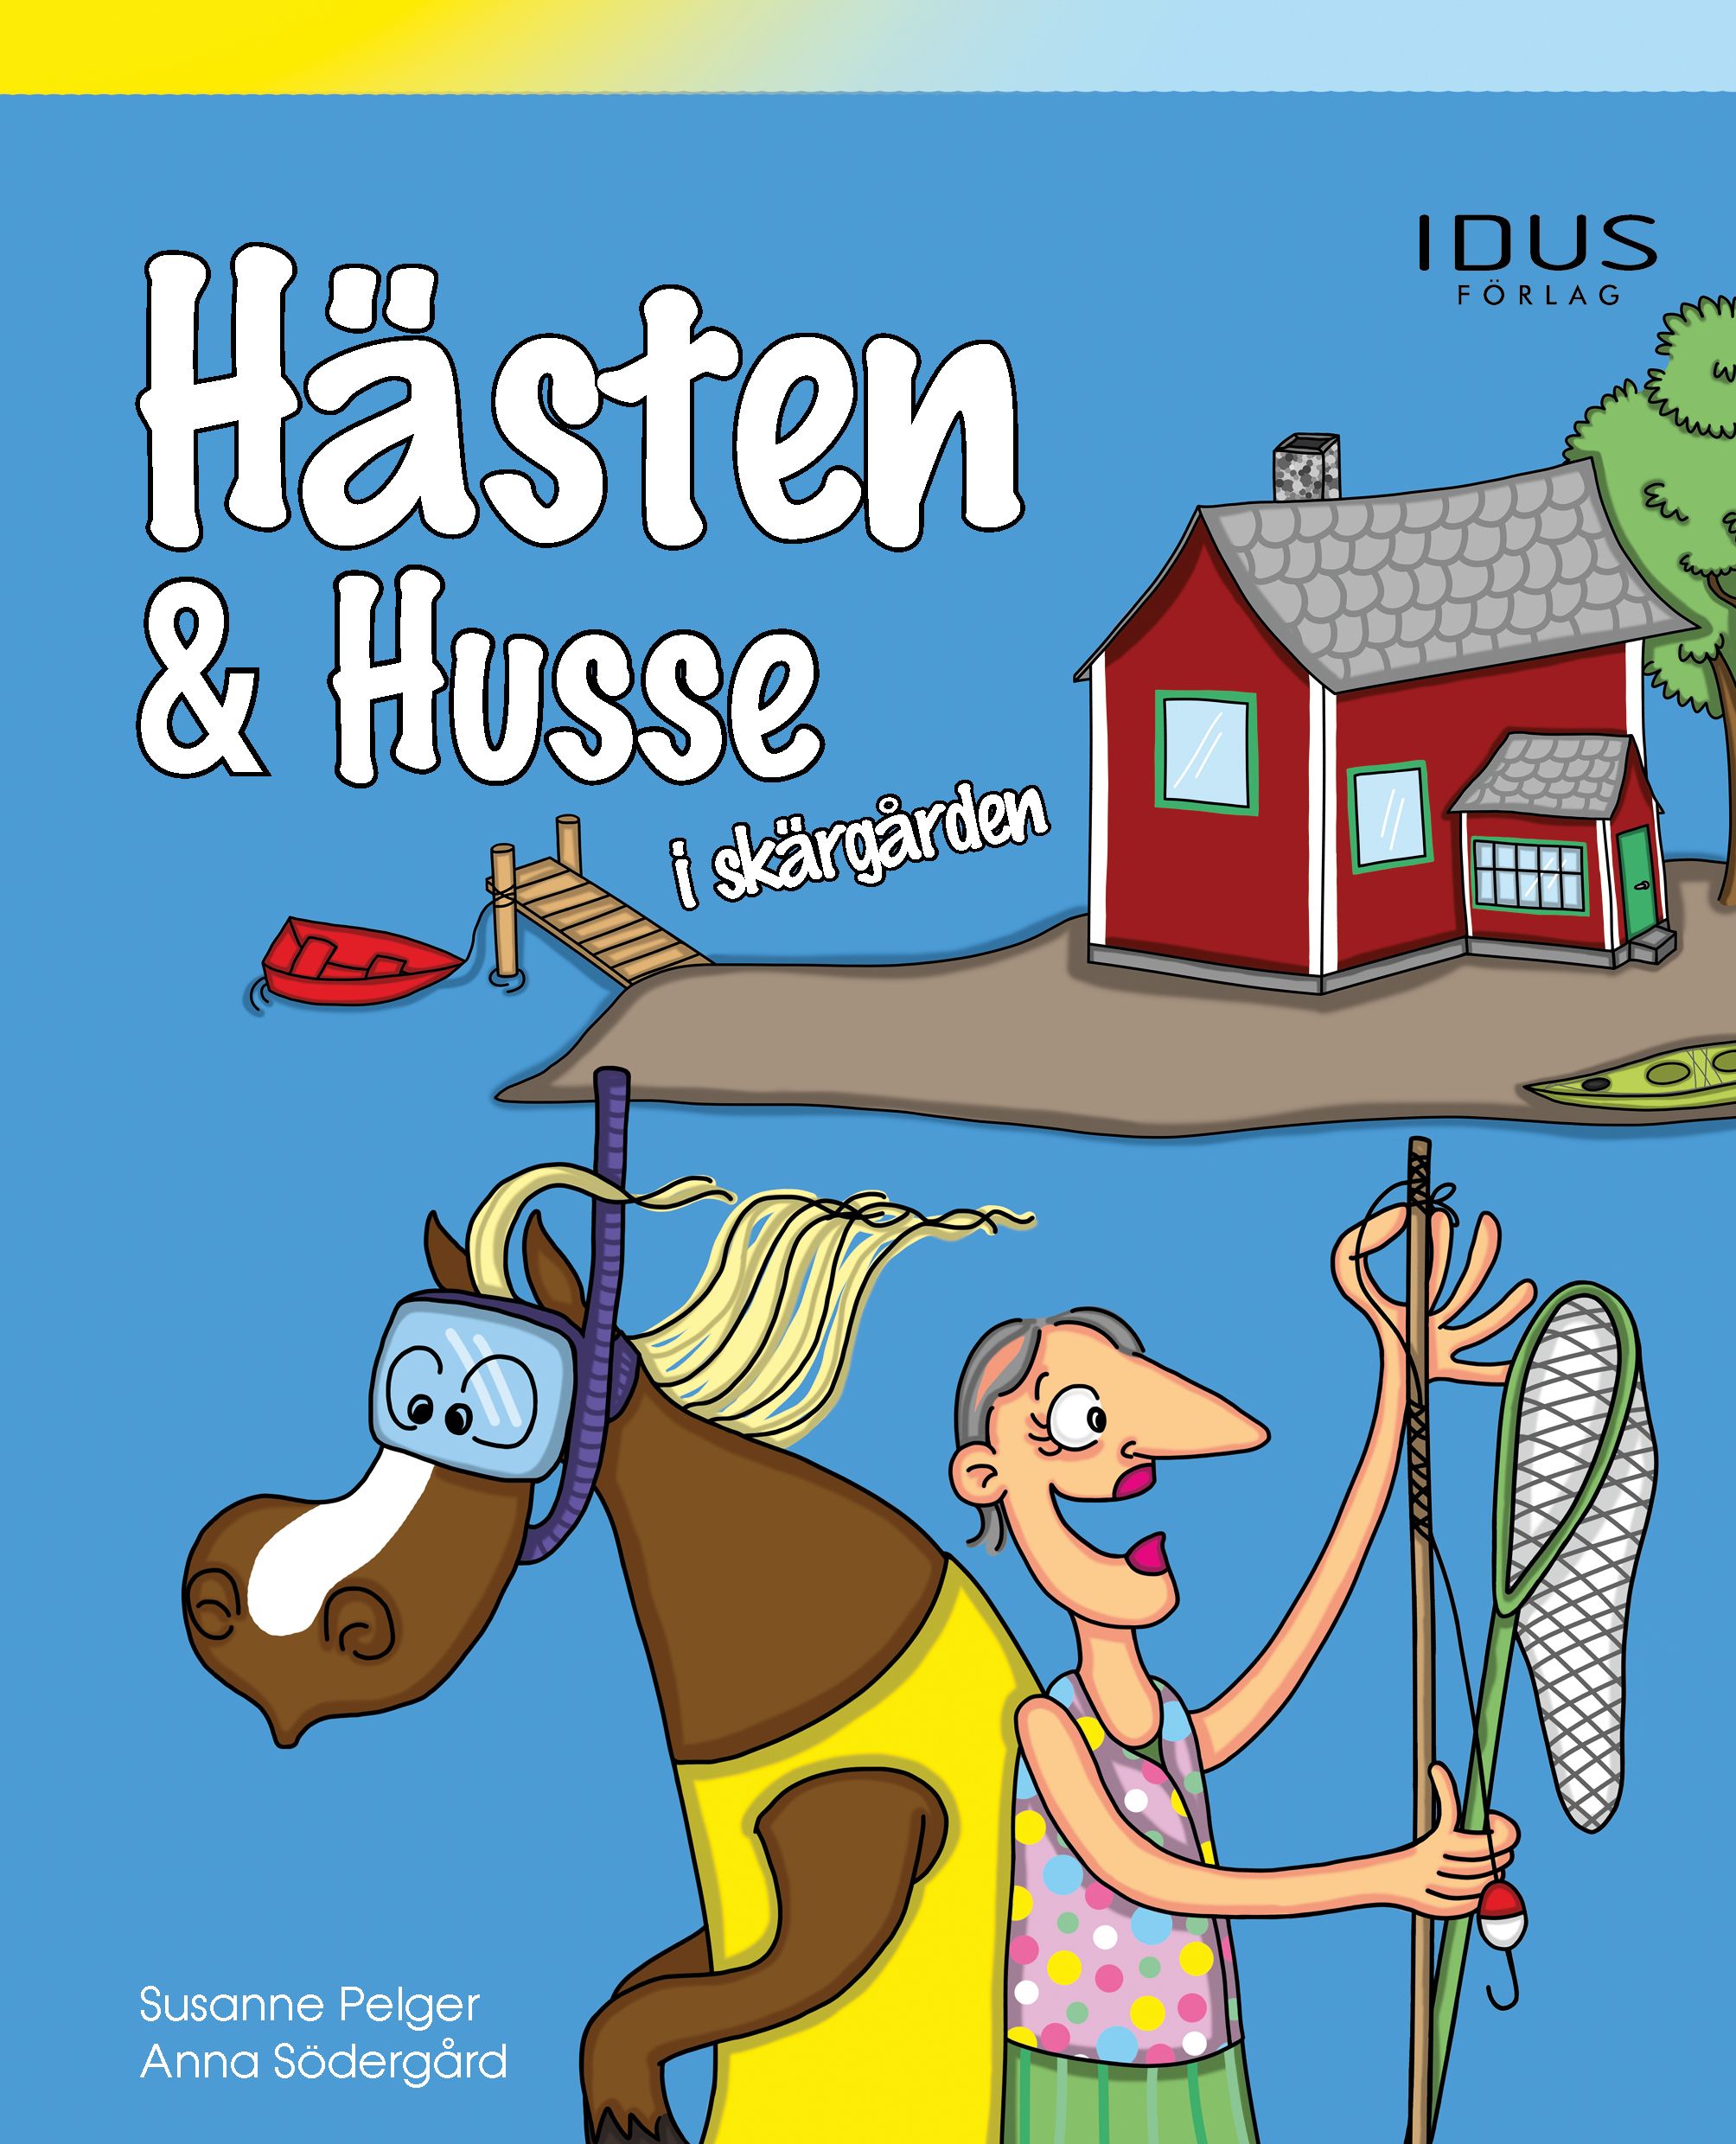 Hästen & Husse i skärgården, e-bok av Susanne Pelger